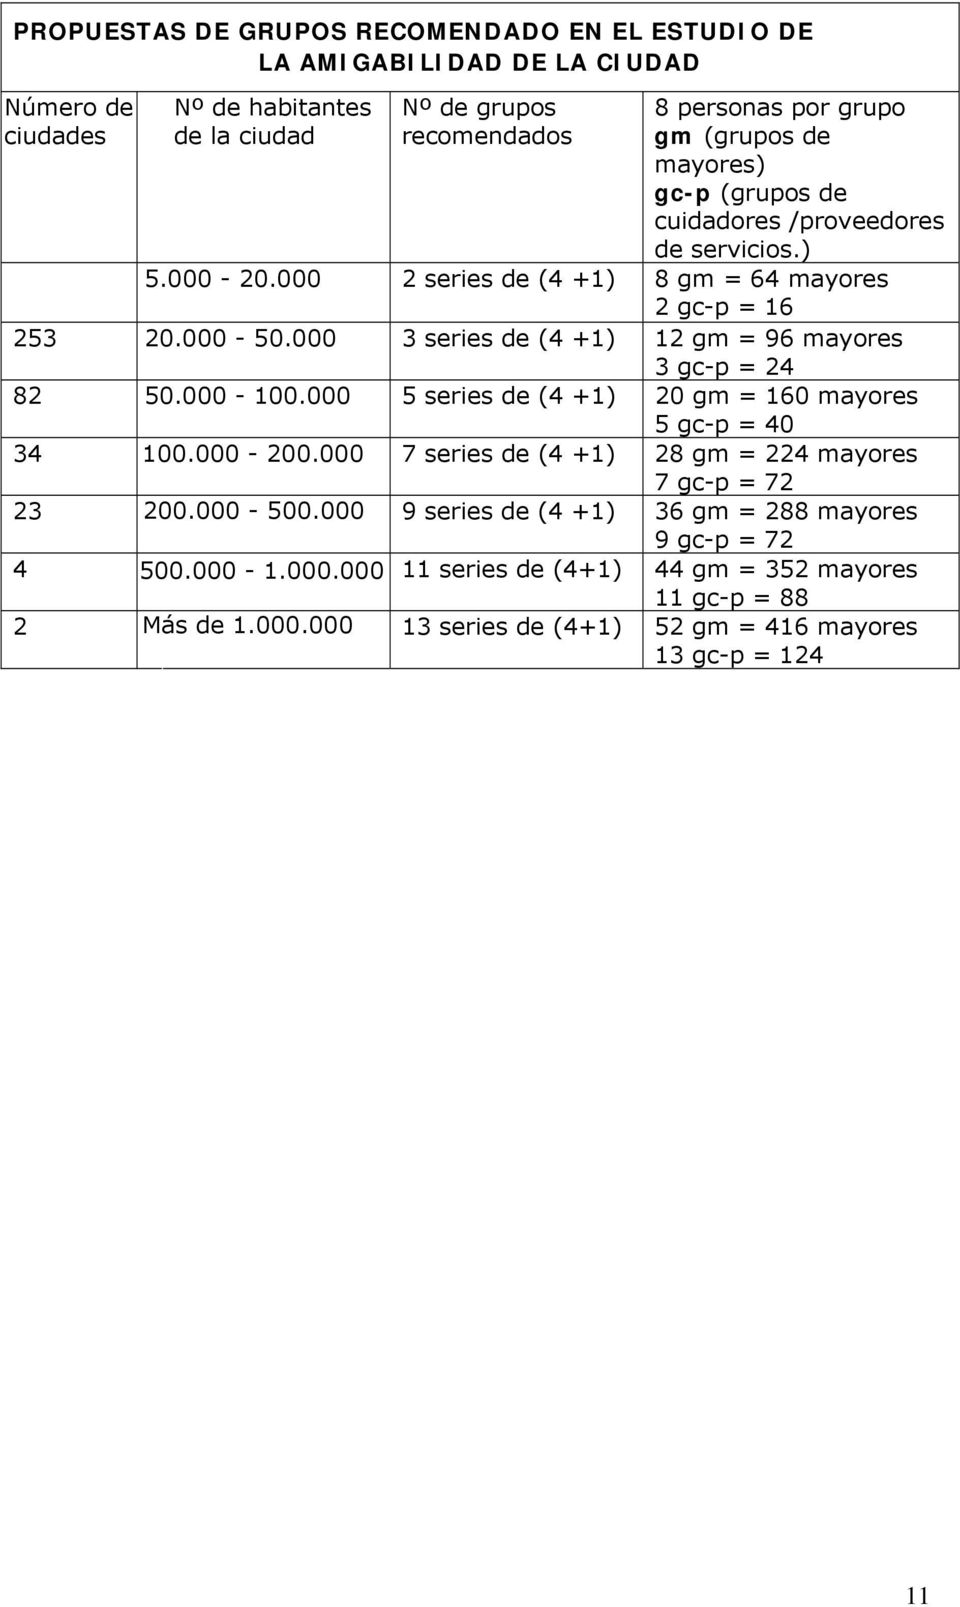 000 3 series de (4 +1) 12 gm = 96 mayores 3 gc-p = 24 82 50.000-100.000 5 series de (4 +1) 20 gm = 160 mayores 5 gc-p = 40 34 100.000-200.